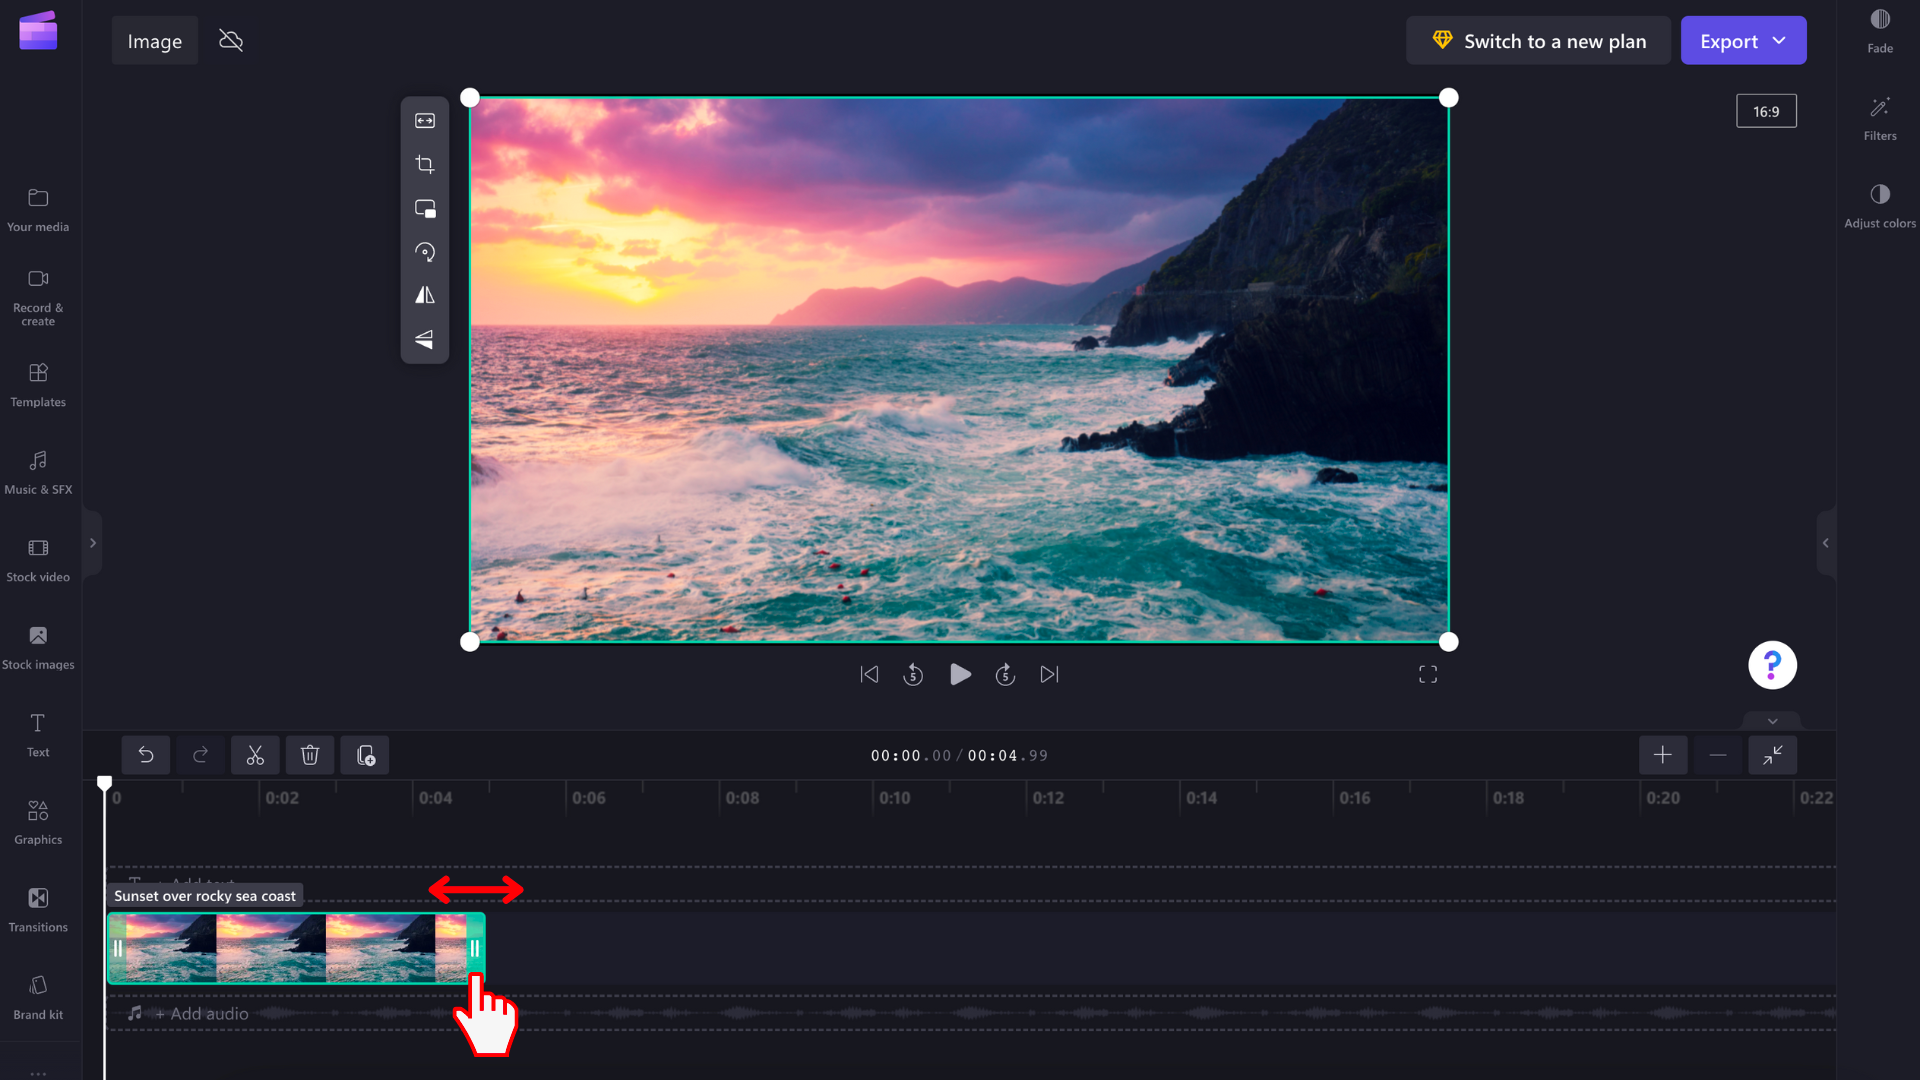 O imagine cu un utilizator glisând barele laterale verzi pentru a edita durata imaginii în cronologie.